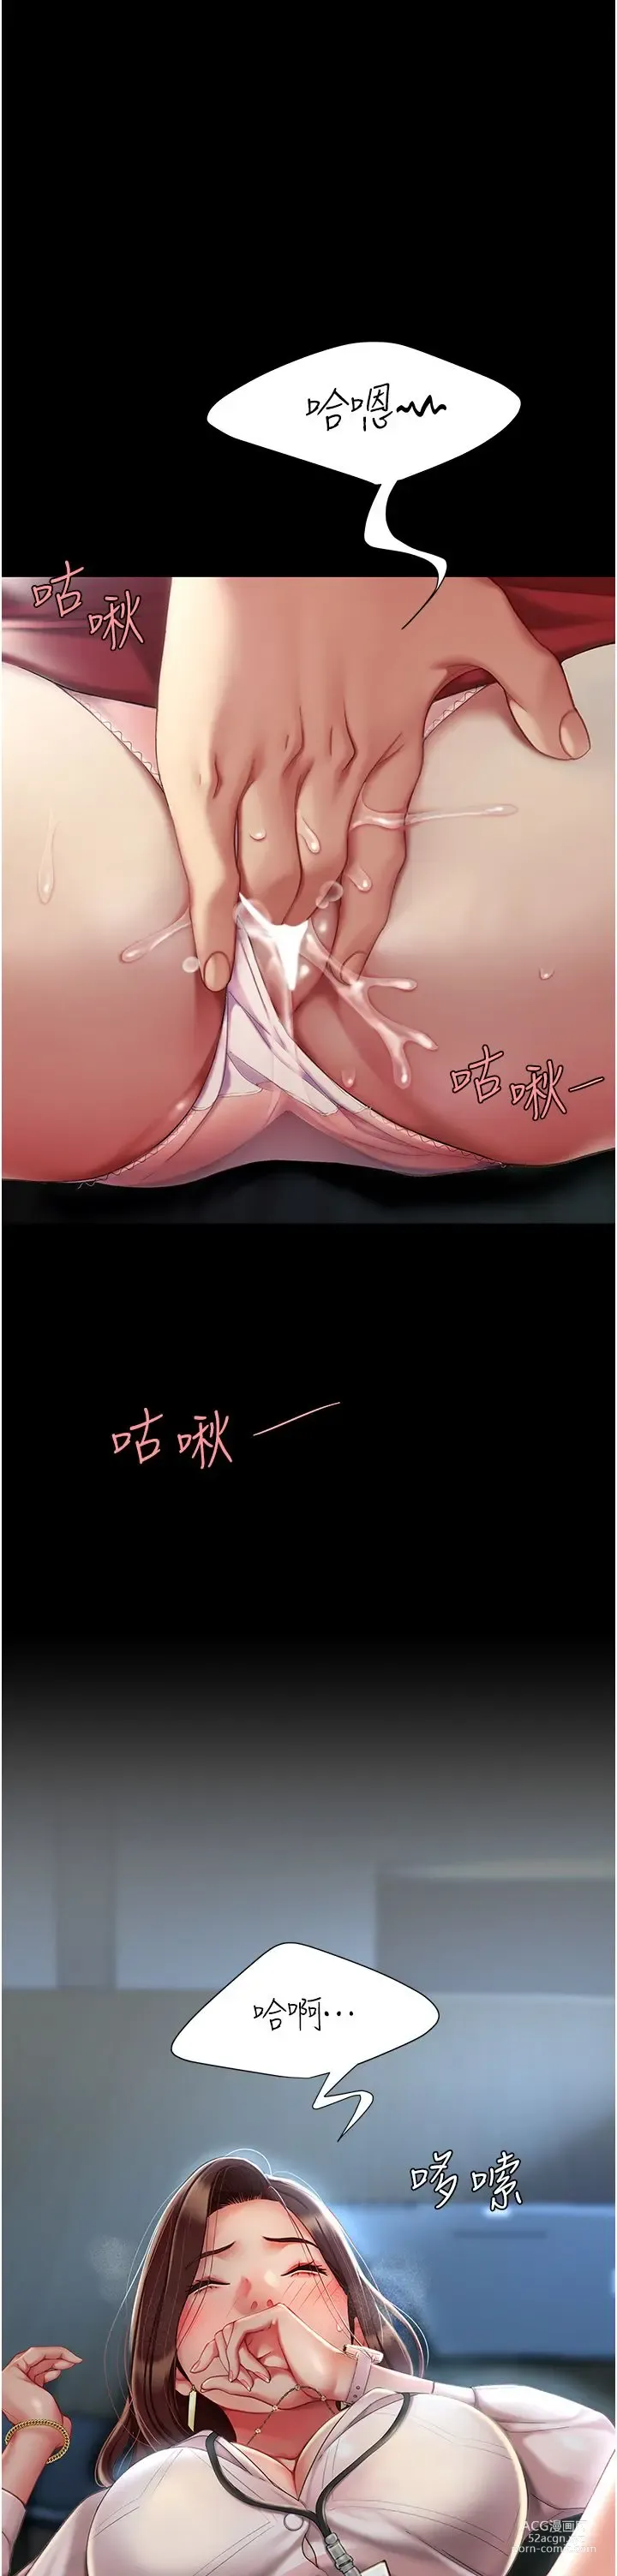 Page 6 of manga 复仇母女丼 1-20话 官中无水印